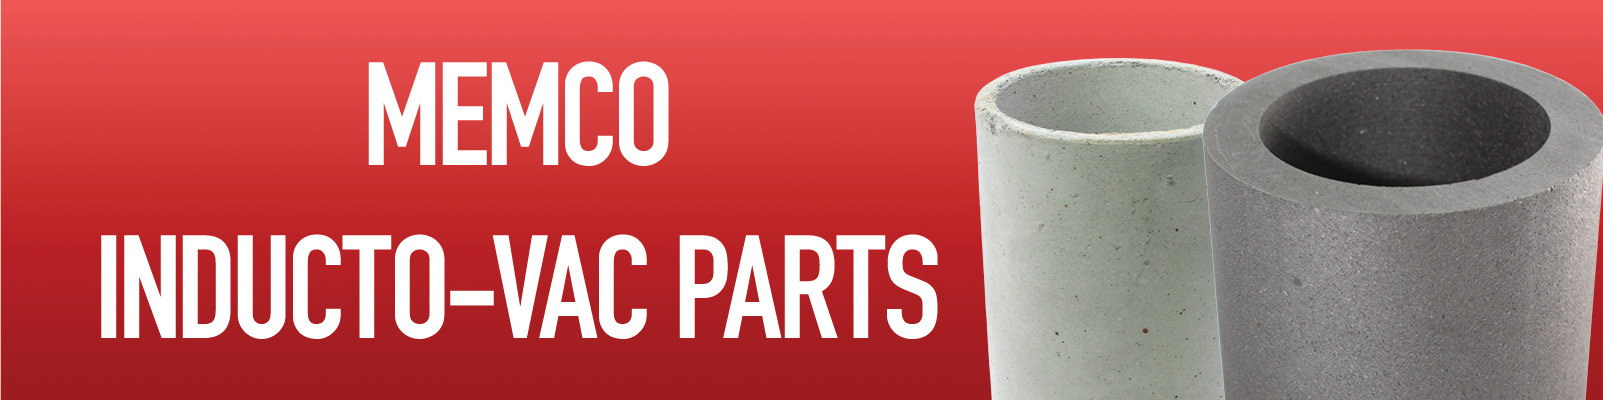 Memco Inducto-Vac Parts